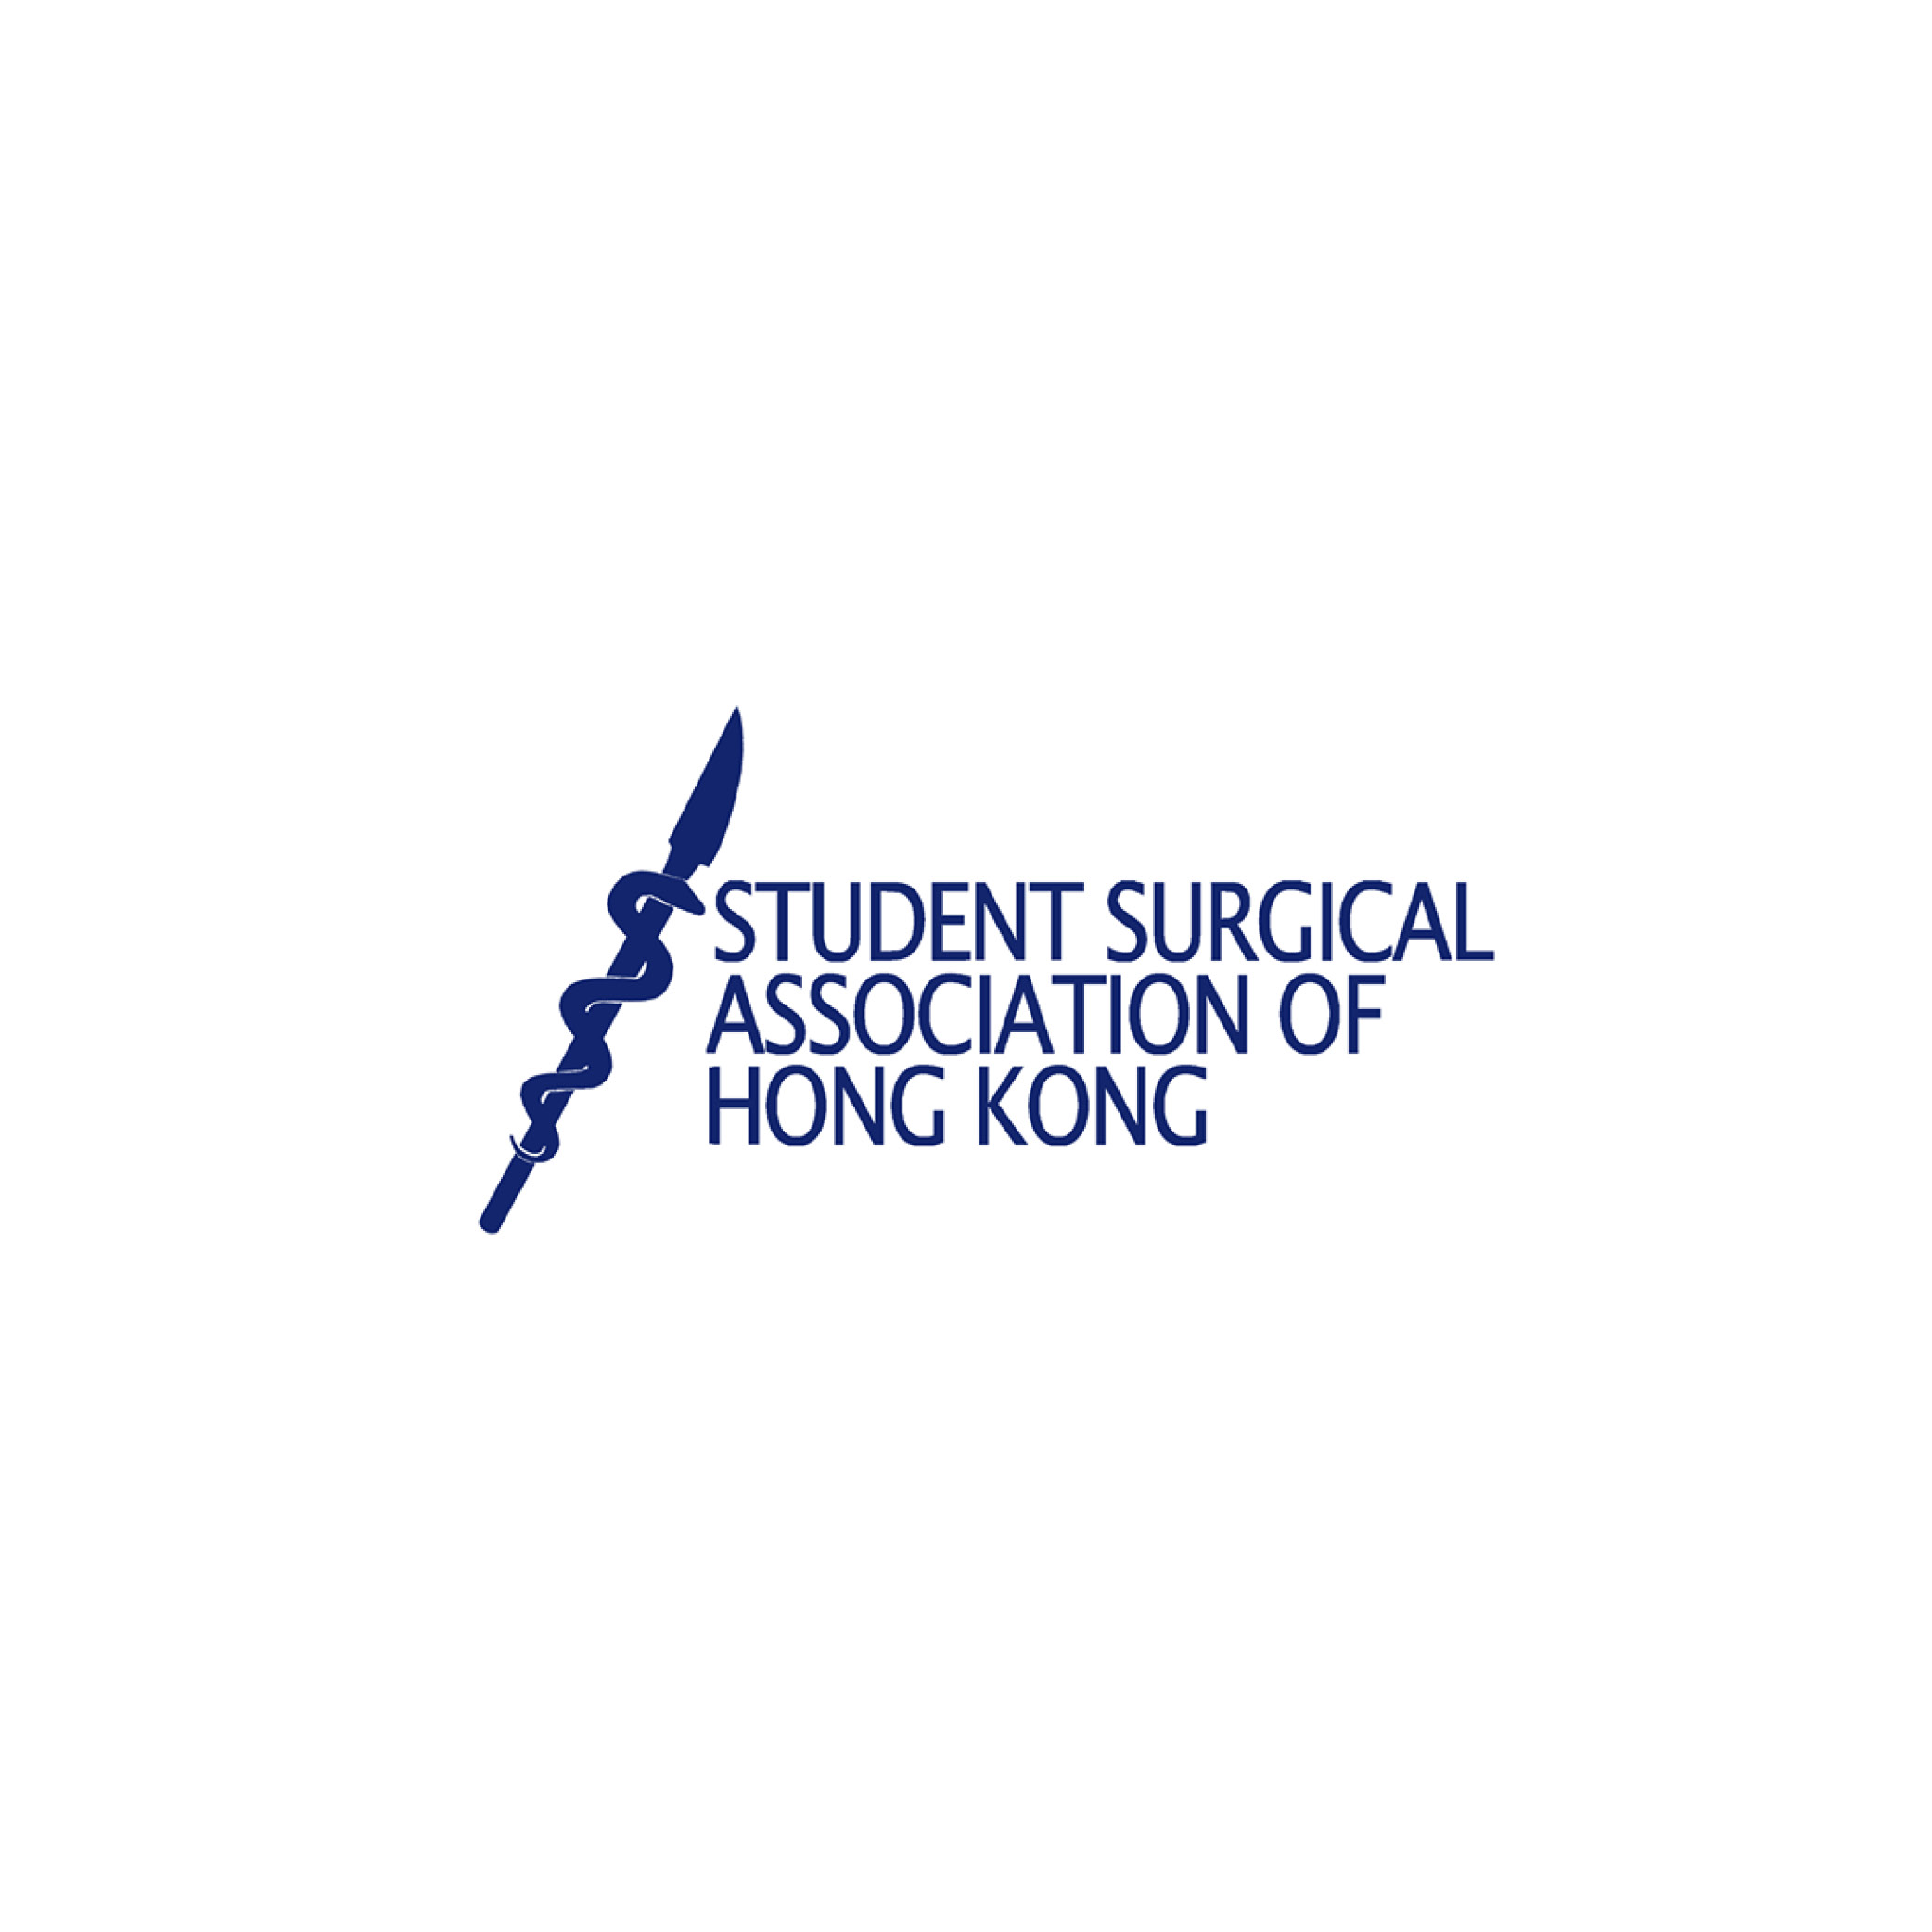 學生組織「Student Surgical Association of Hong Kong」的標誌